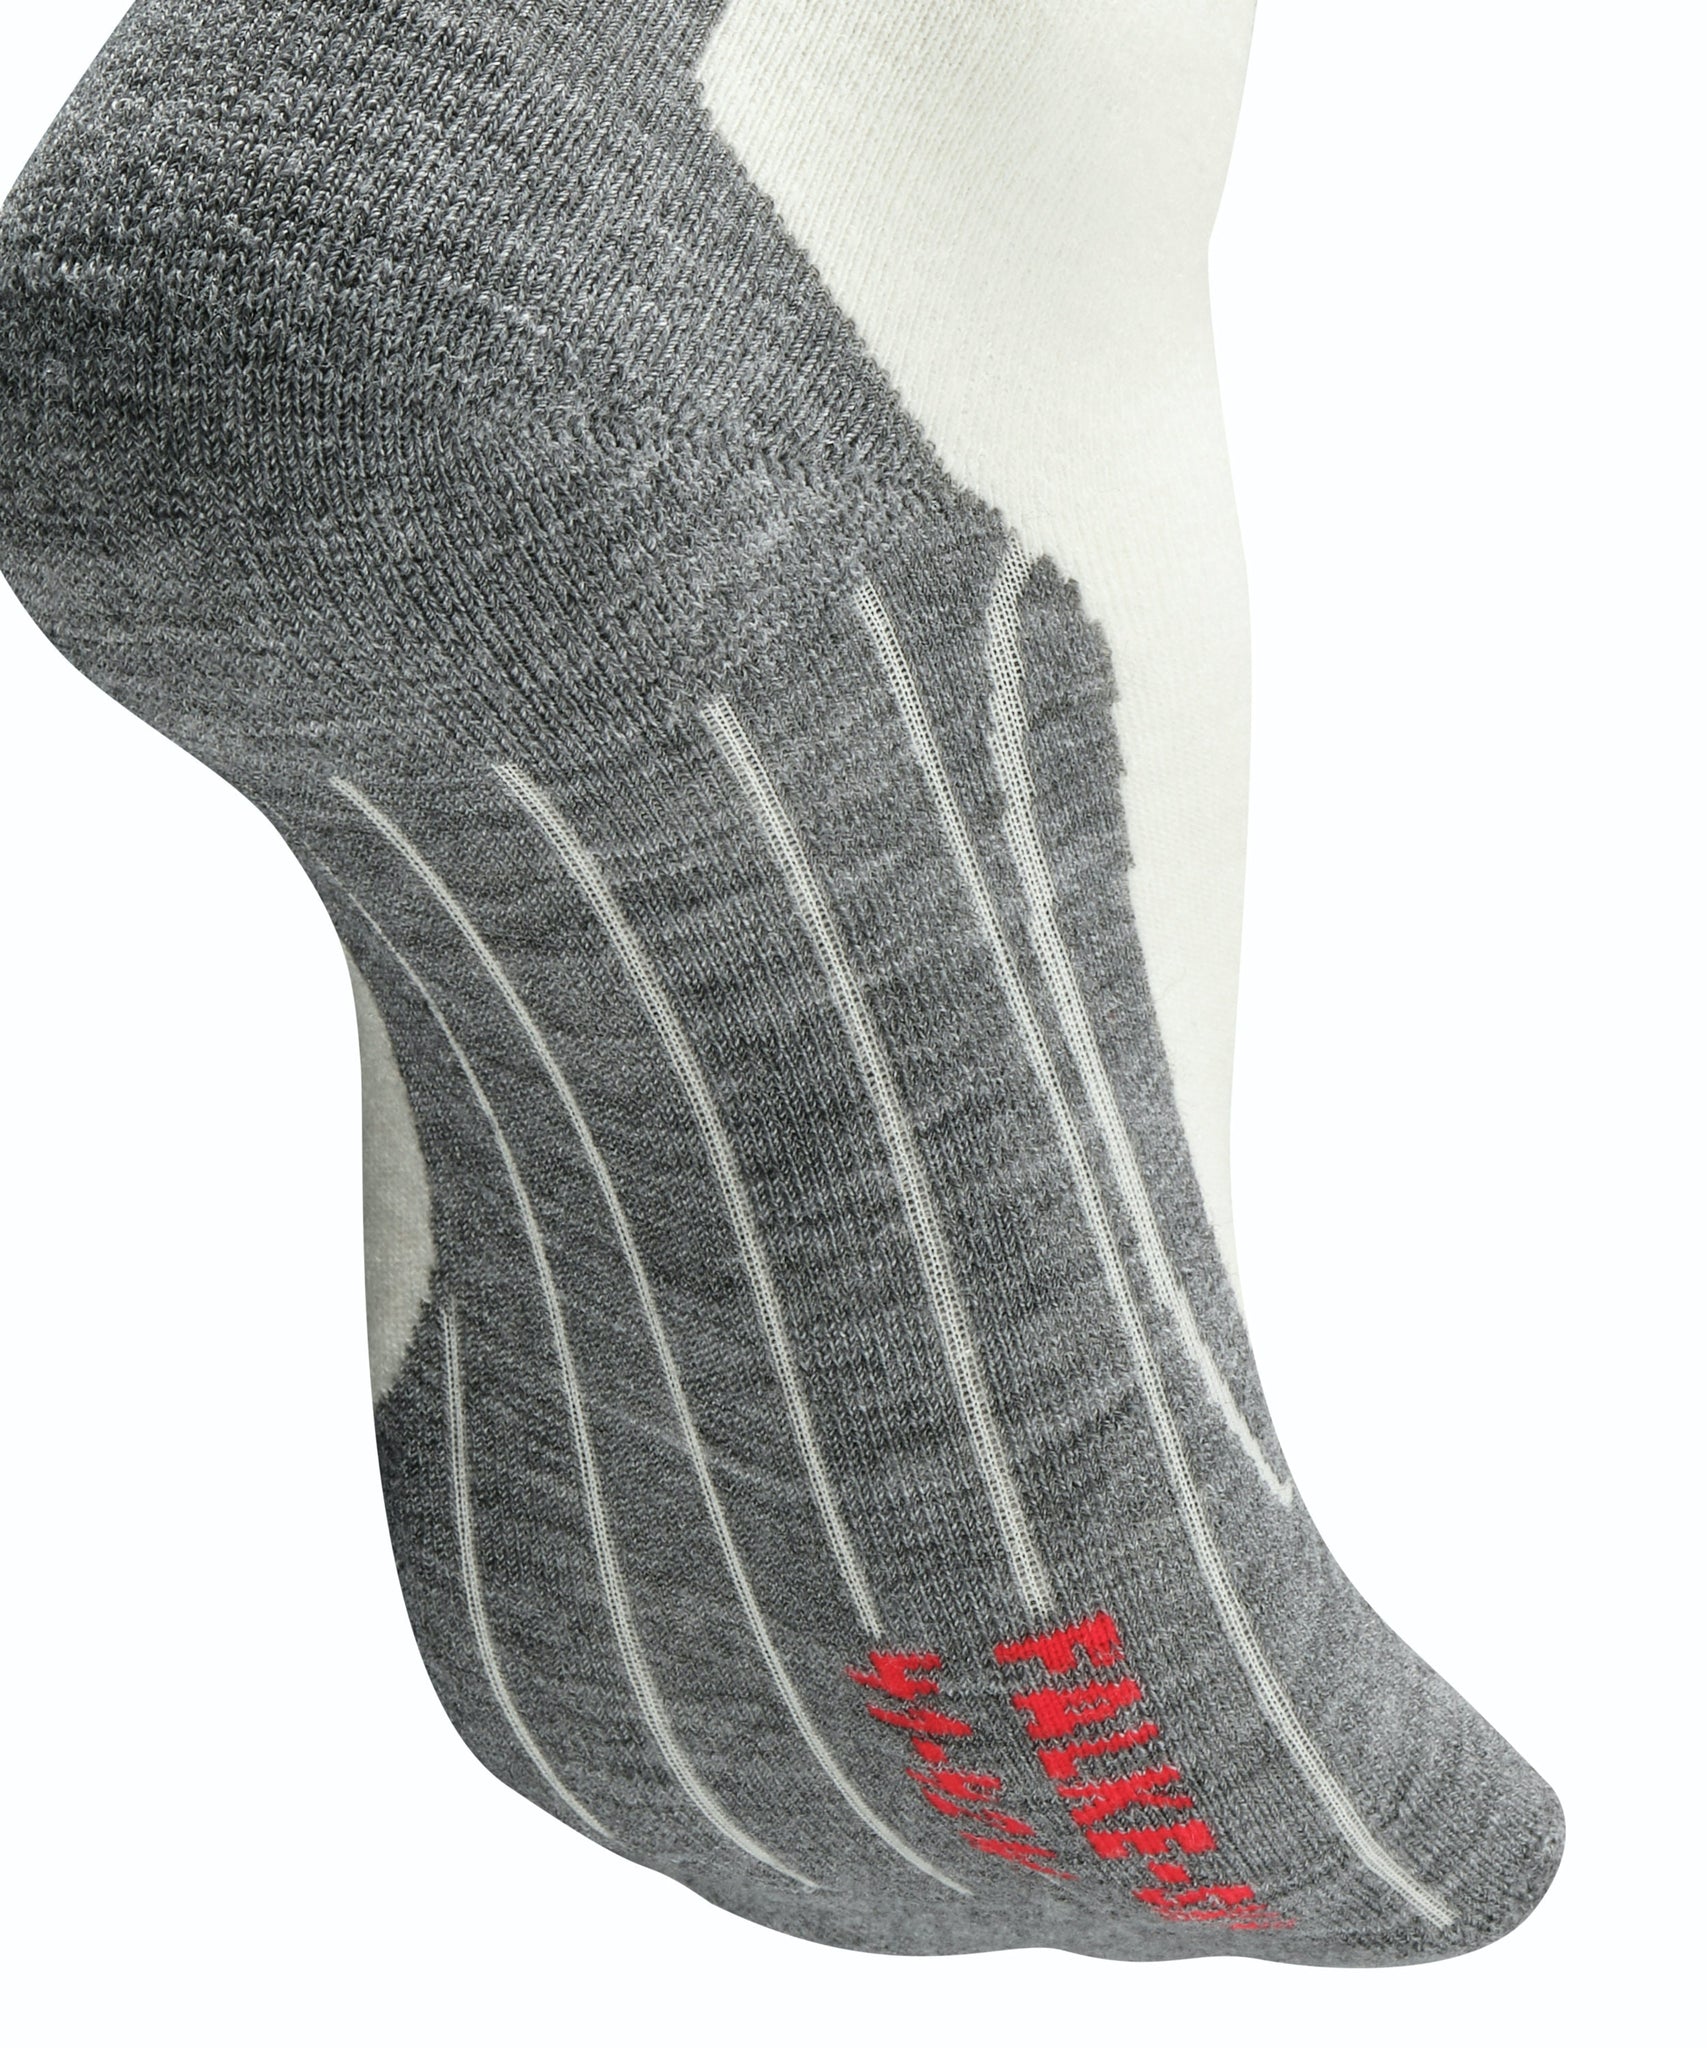 Falke SK4 Women's Ski Socks - Sale! Buy One, Get One 30% Off